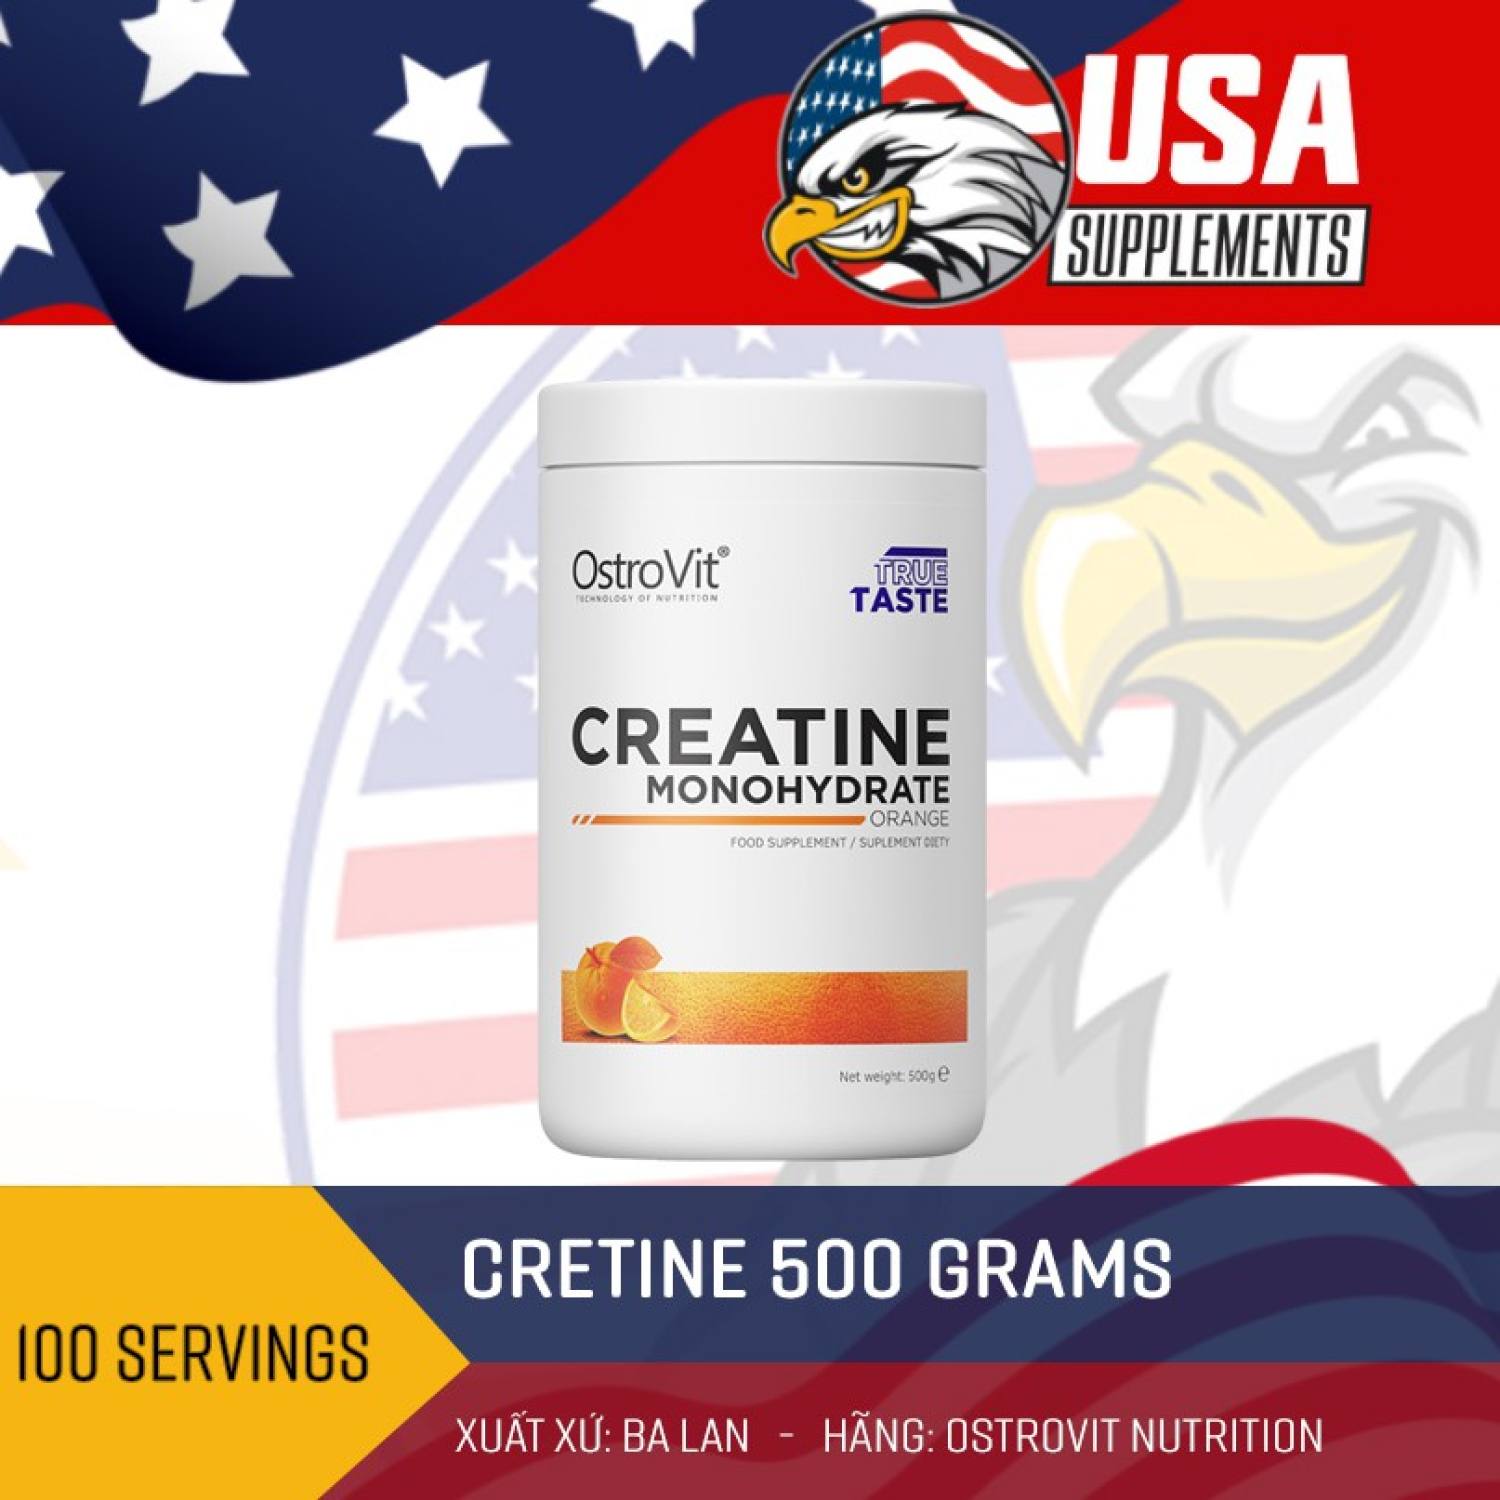 Ostrovit Creatine Tăng Sức Mạnh Cơ Bắp 500 gram - 100 lần dùng